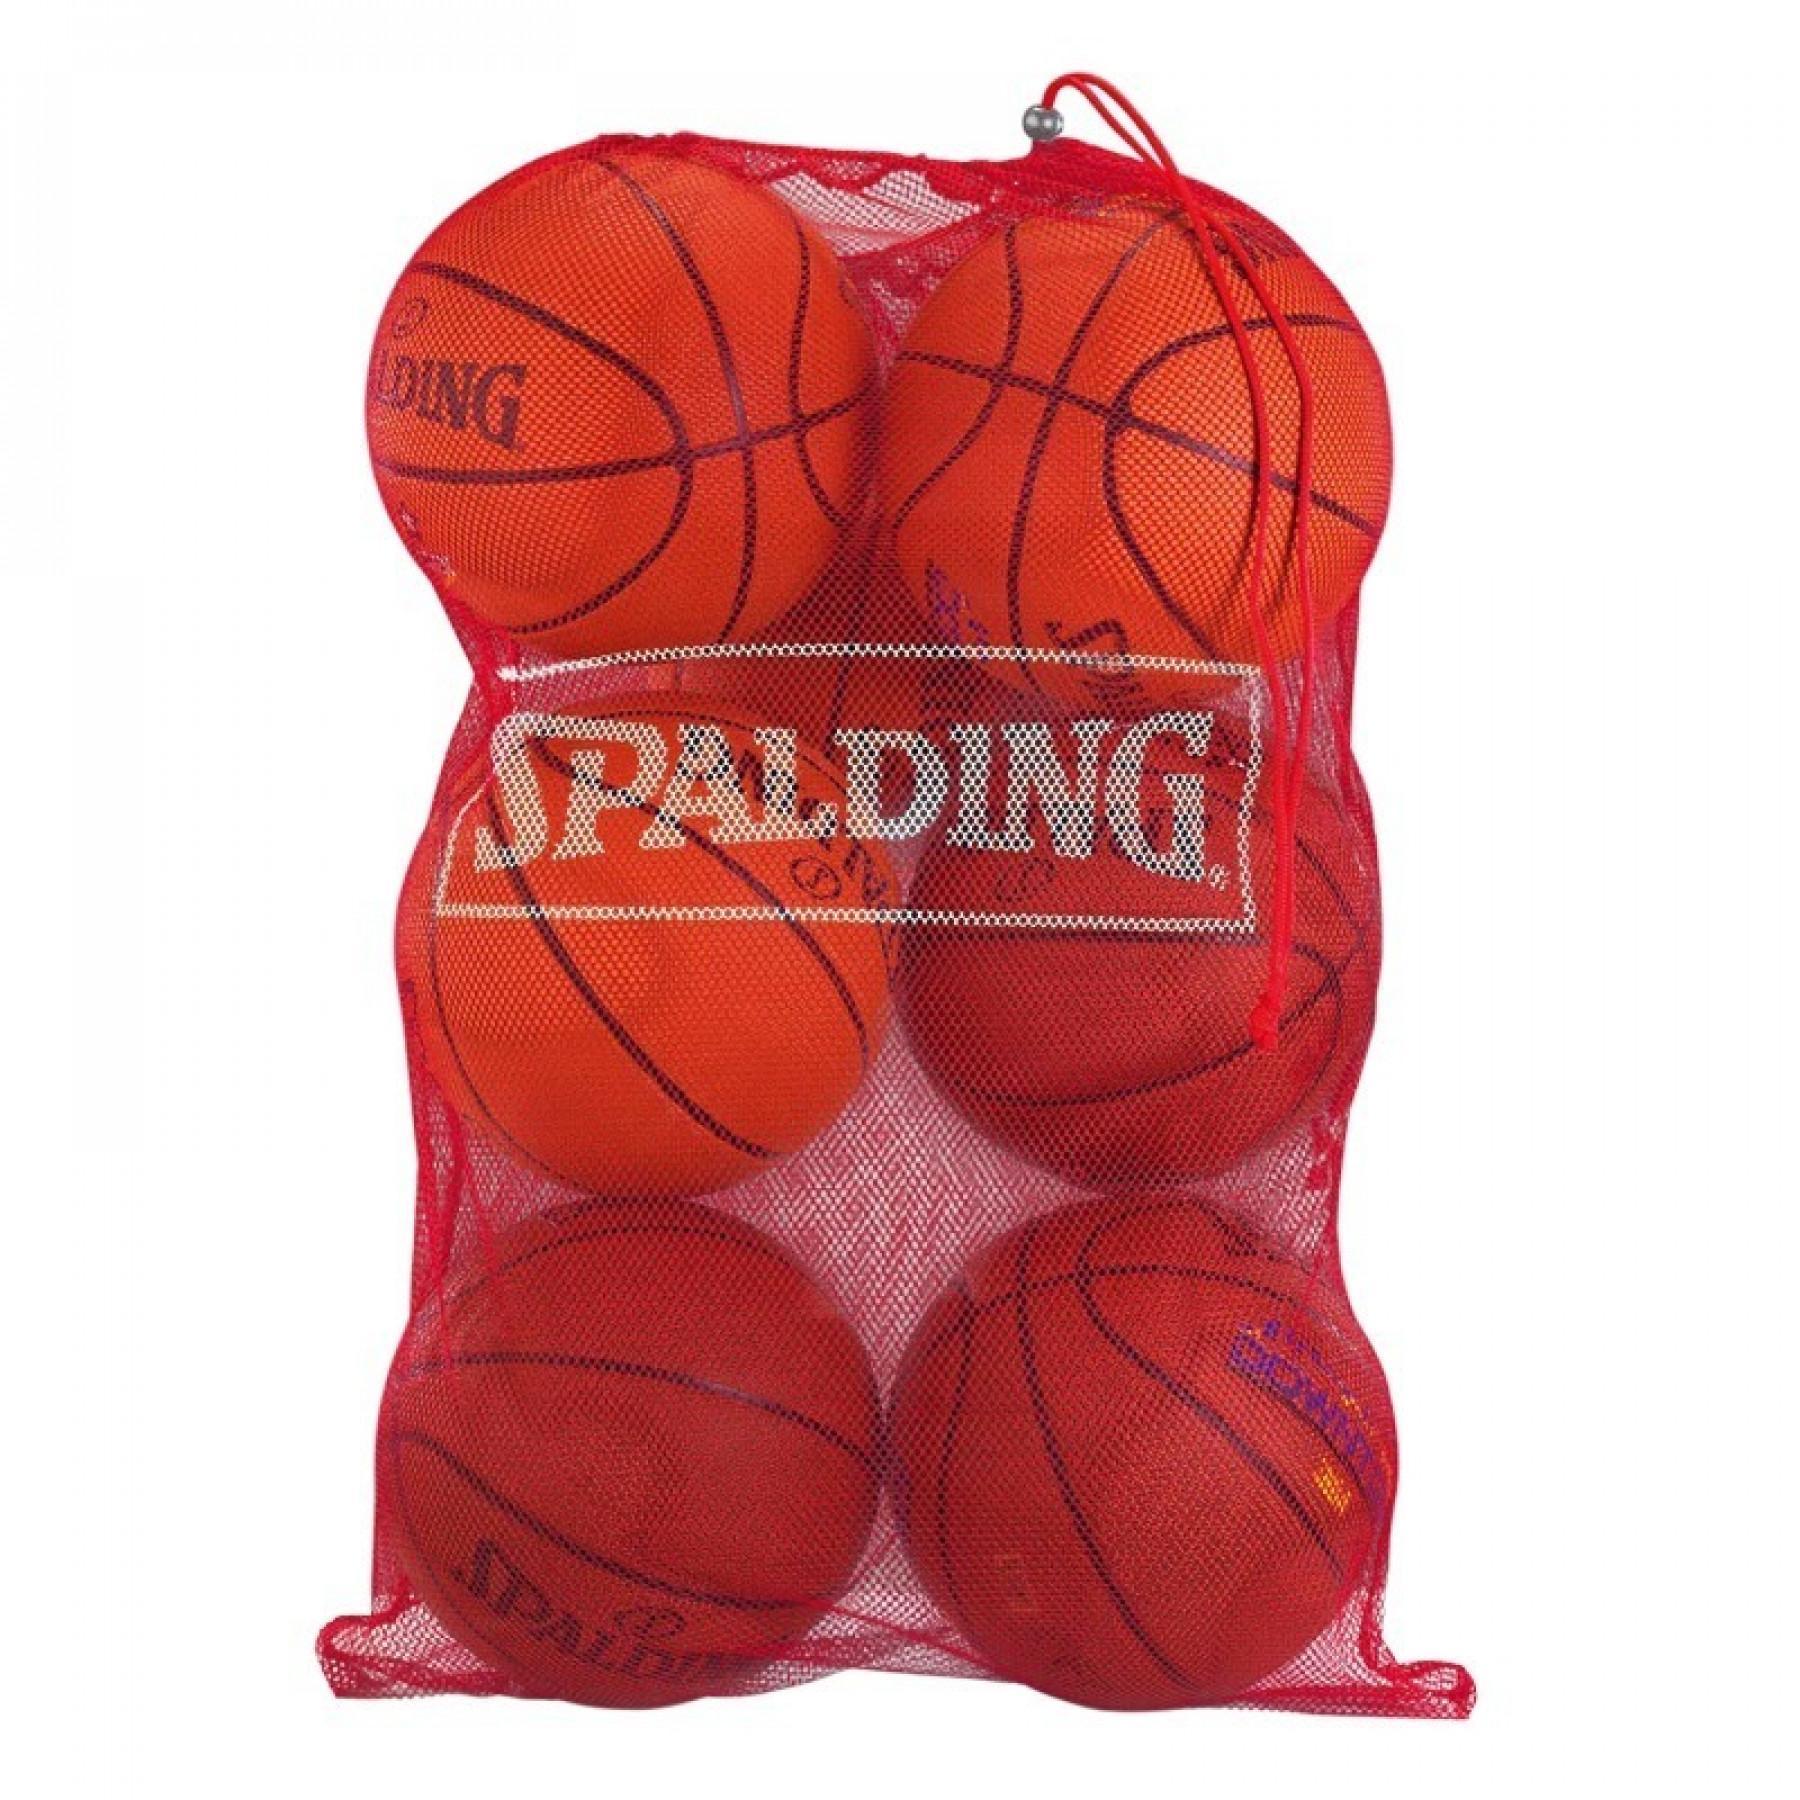 Balloon bag Spalding (7 ballons)